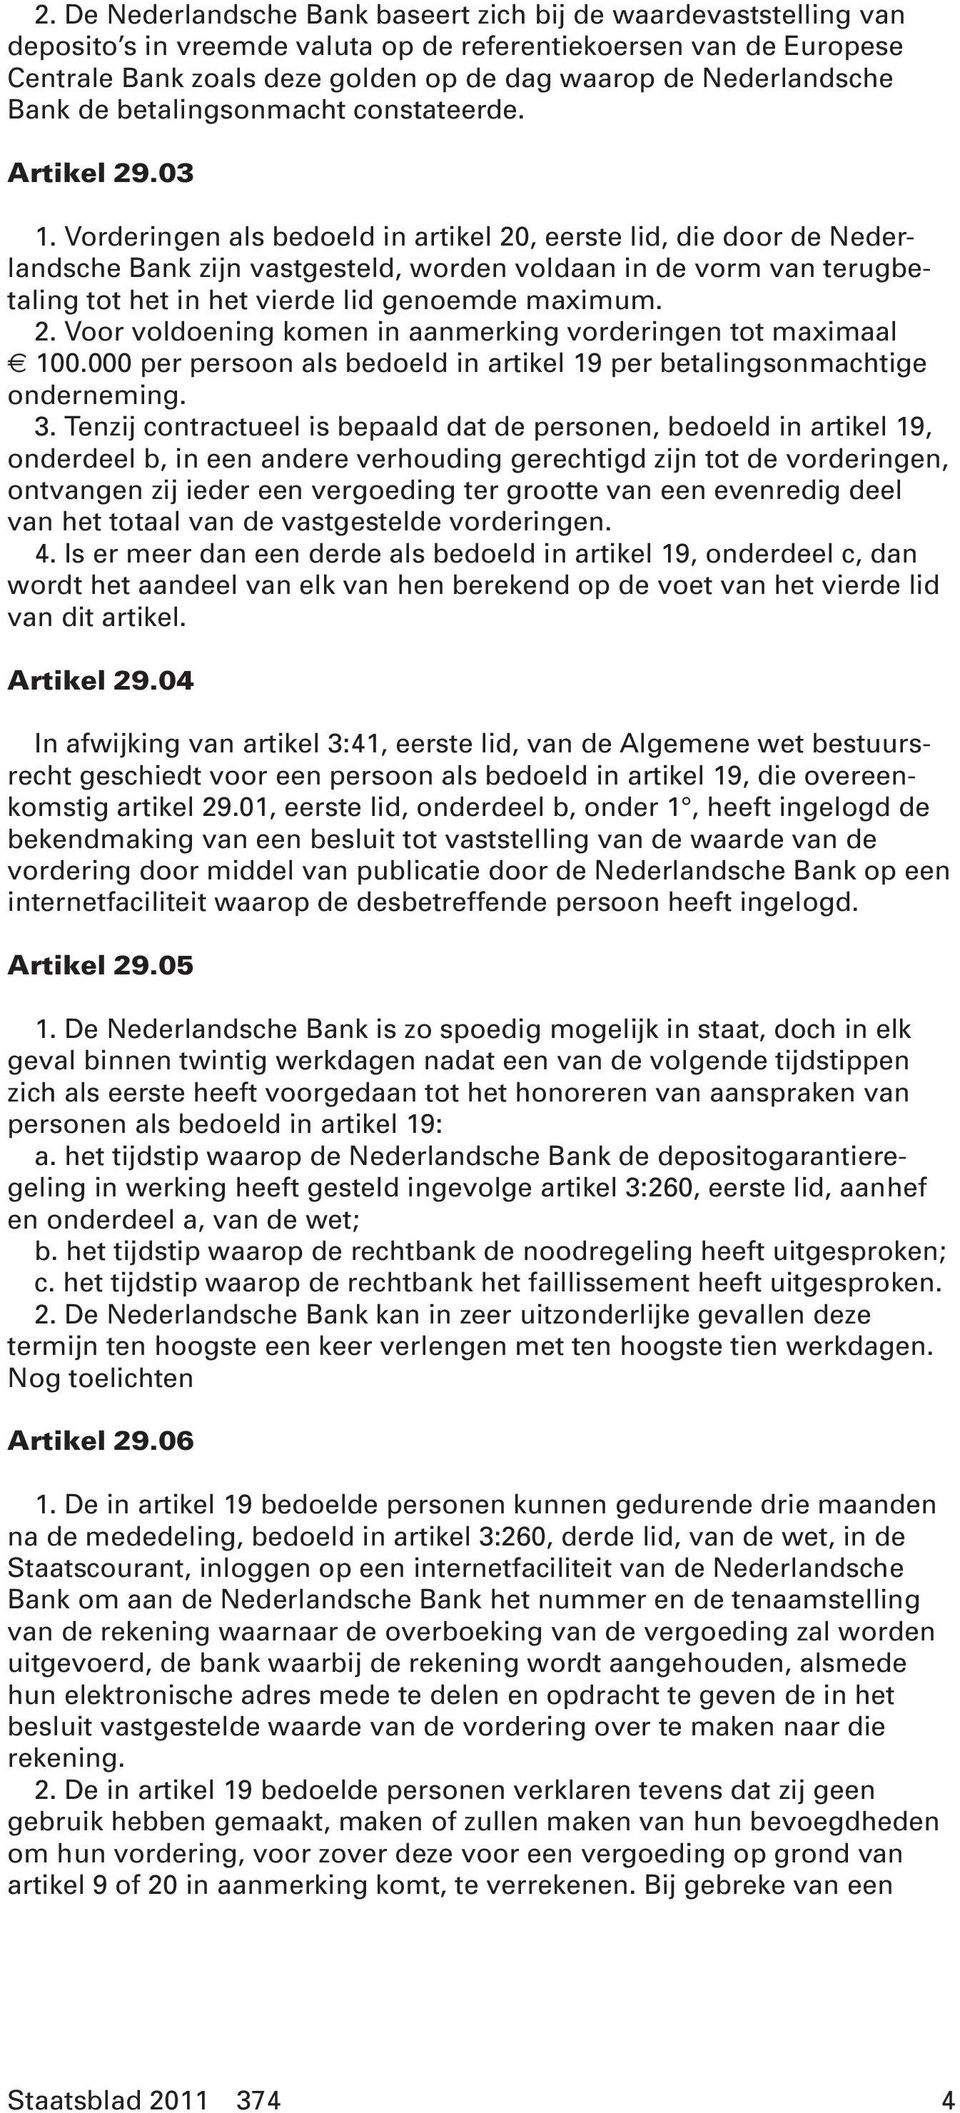 Vorderingen als bedoeld in artikel 20, eerste lid, die door de Nederlandsche Bank zijn vastgesteld, worden voldaan in de vorm van terugbetaling tot het in het vierde lid genoemde maximum. 2. Voor voldoening komen in aanmerking vorderingen tot maximaal 100.